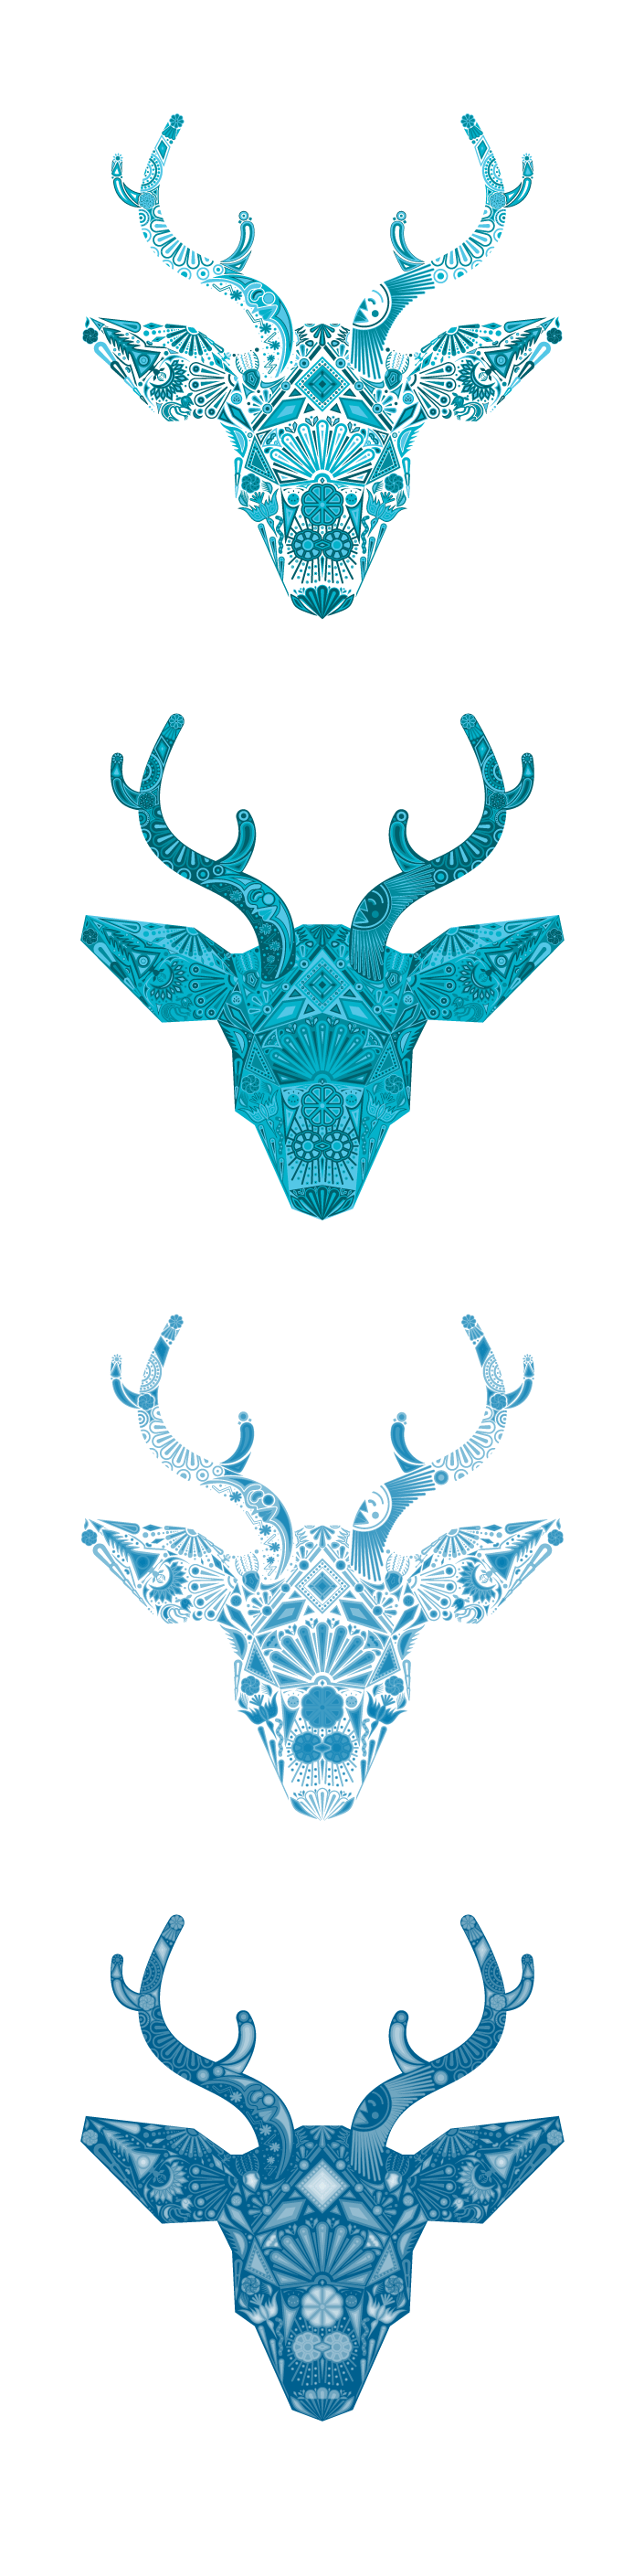 deer venado mexico Mexican indigenous culture peyote God creation antler vector blue green